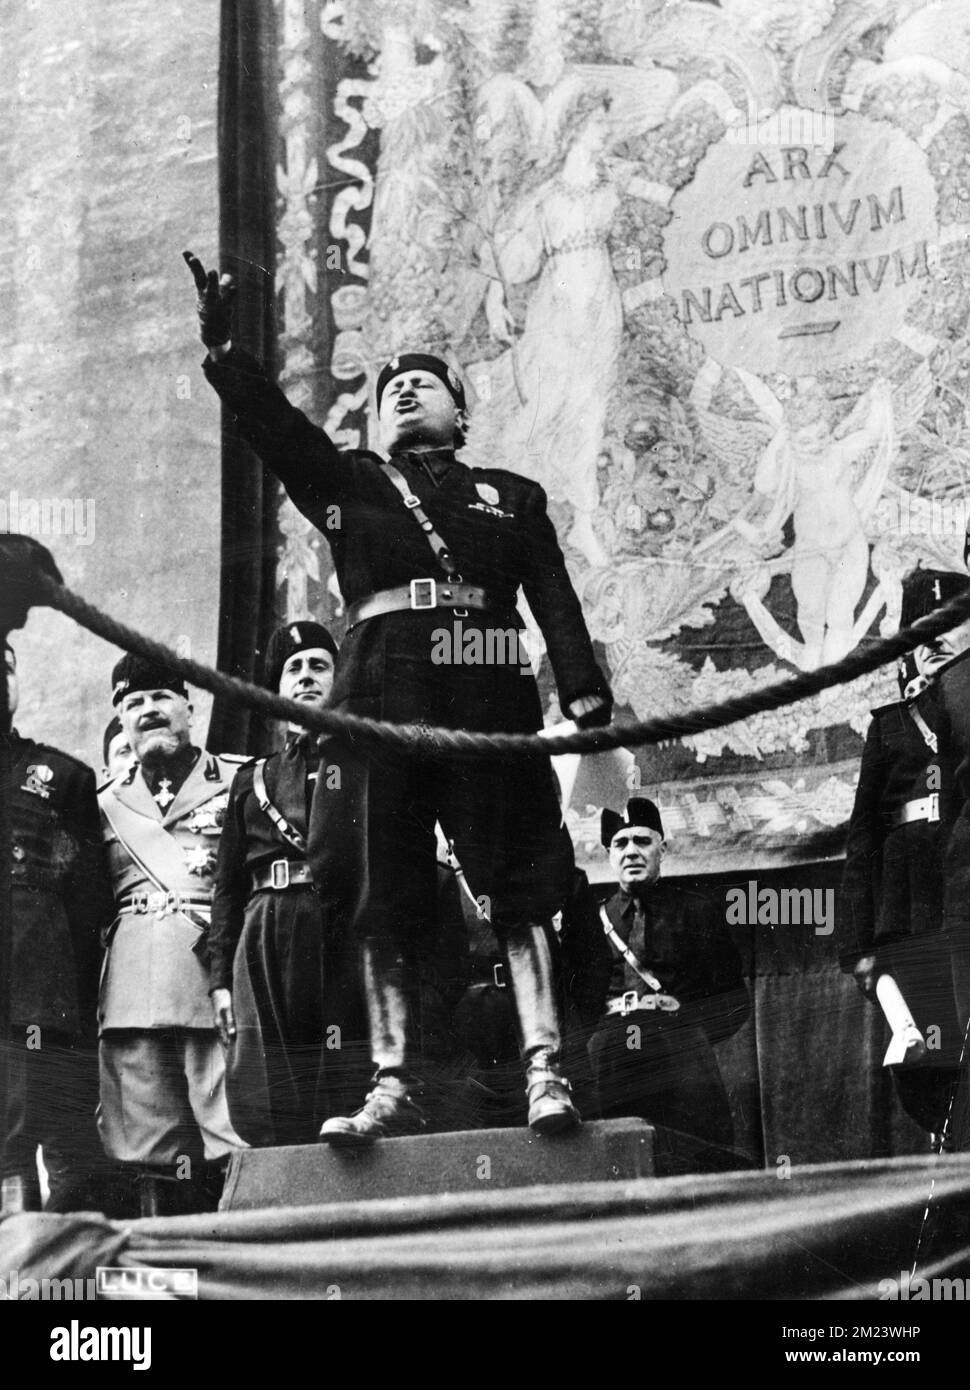 Mussolini, Benito Mussolini, Benito Amilcare Andrea Mussolini (1883 – 1945) politico italiano che ha fondato e guidato il Partito Nazionale fascista. Fu primo Ministro d'Italia dal 1922 fino alla sua deposizione nel 1943, e 'Duce' del fascismo italiano dall'istituzione delle fasce di combattimento italiane nel 1919 fino alla sua esecuzione nel 1945 da parte dei partigiani italiani. Foto Stock